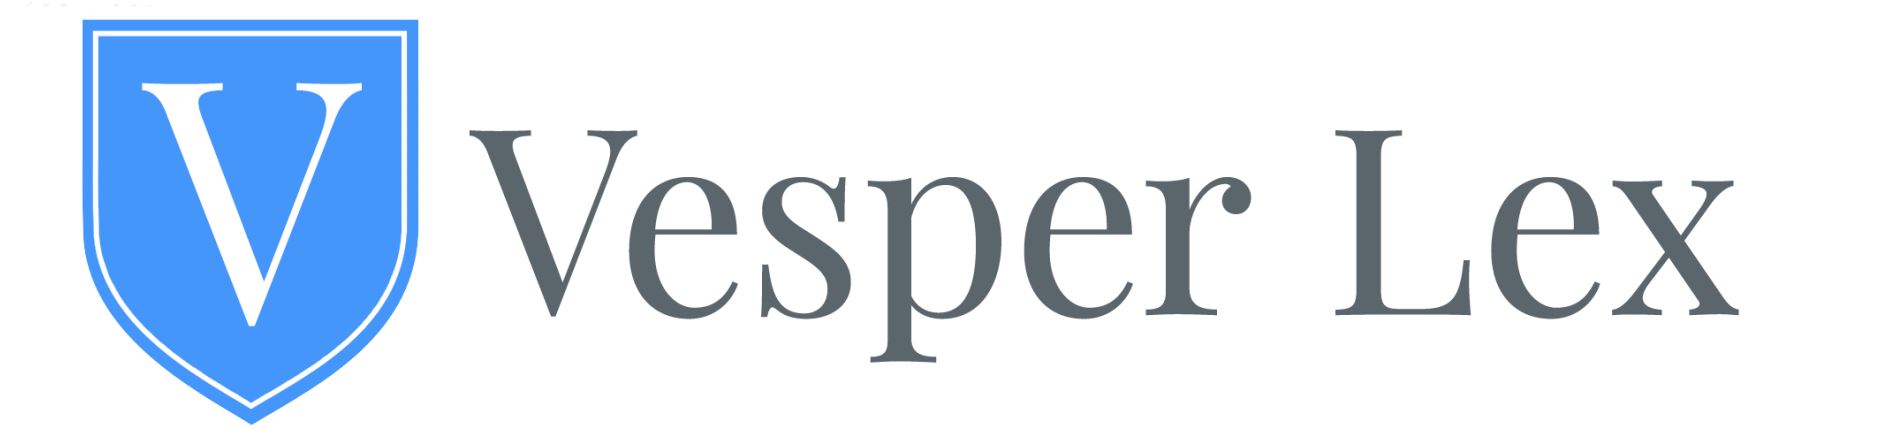 vesper lex logo